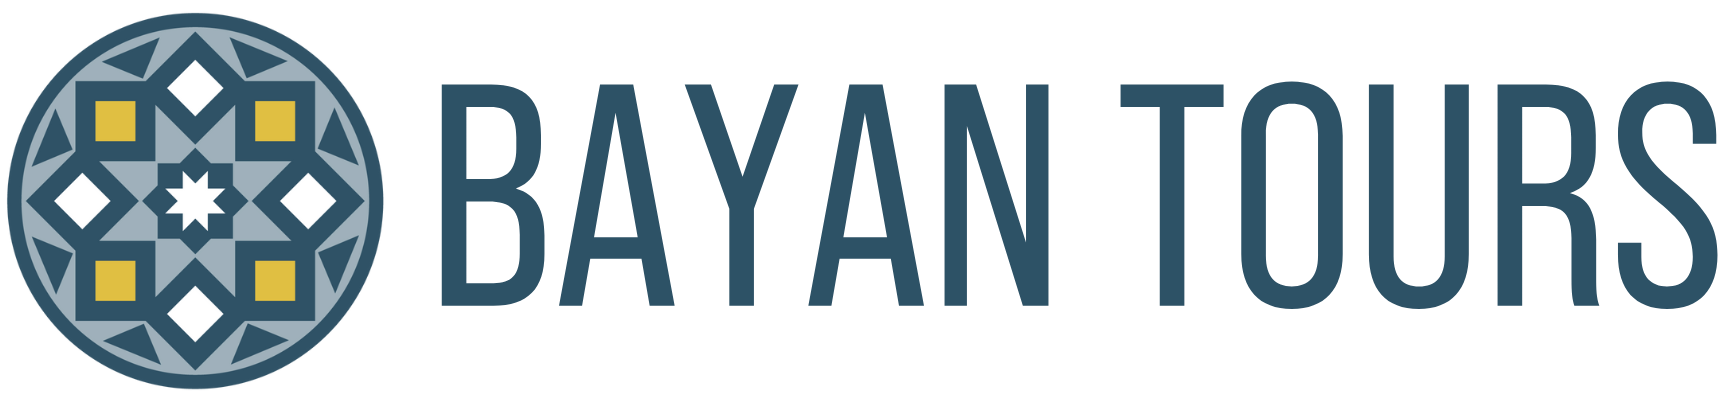 BAYAN TOURS -4-1